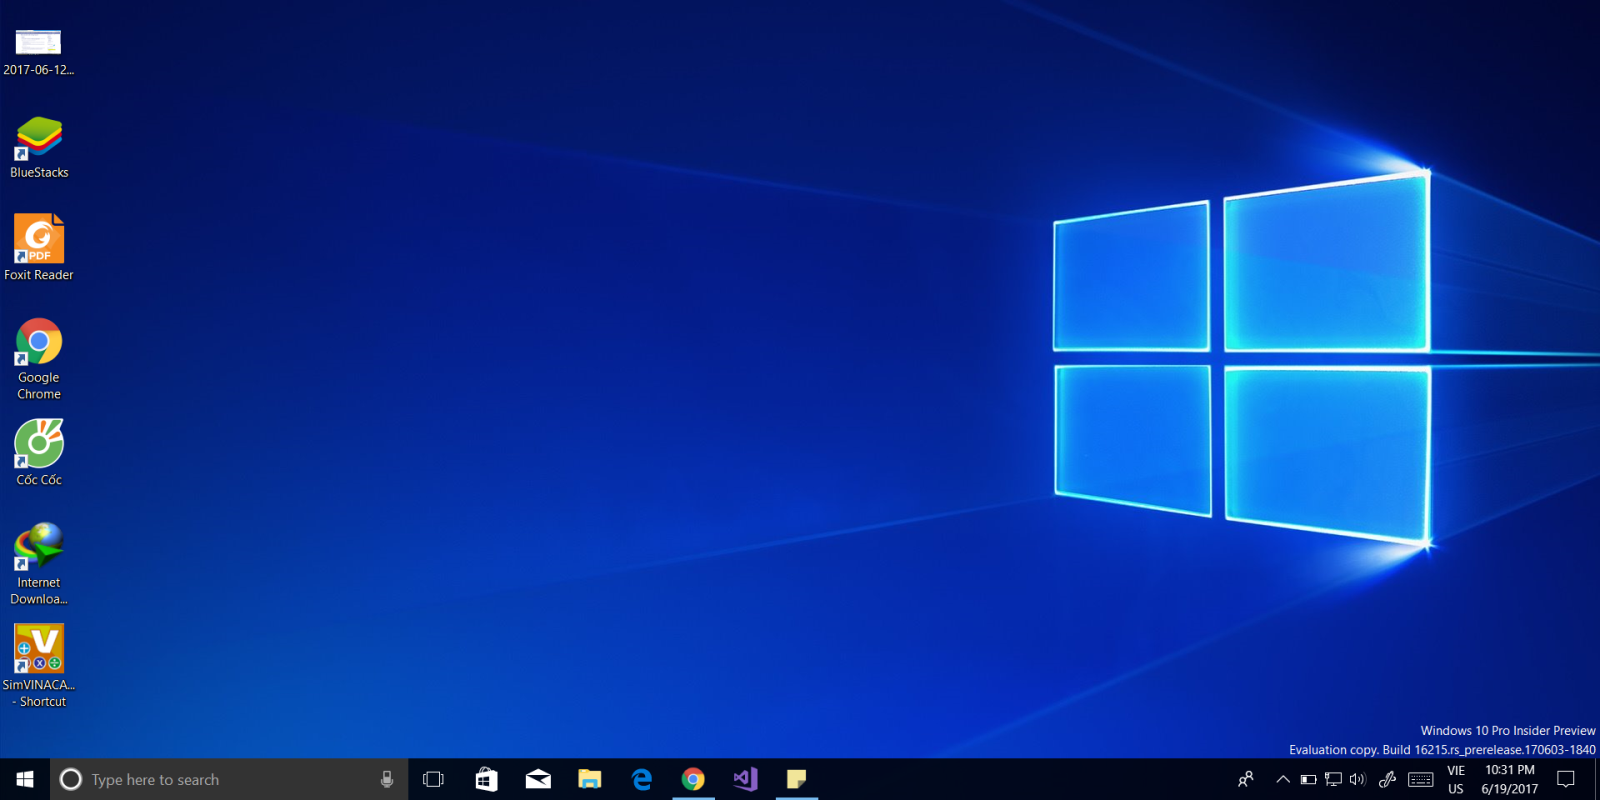 Windows 10 S: Windows 10 S đã nâng cấp của hệ điều hành Windows 10, giúp máy tính hoạt động nhanh hơn và an toàn hơn. Xem hình ảnh liên quan để tìm hiểu thêm về các tính năng và lợi ích của Windows 10 S.